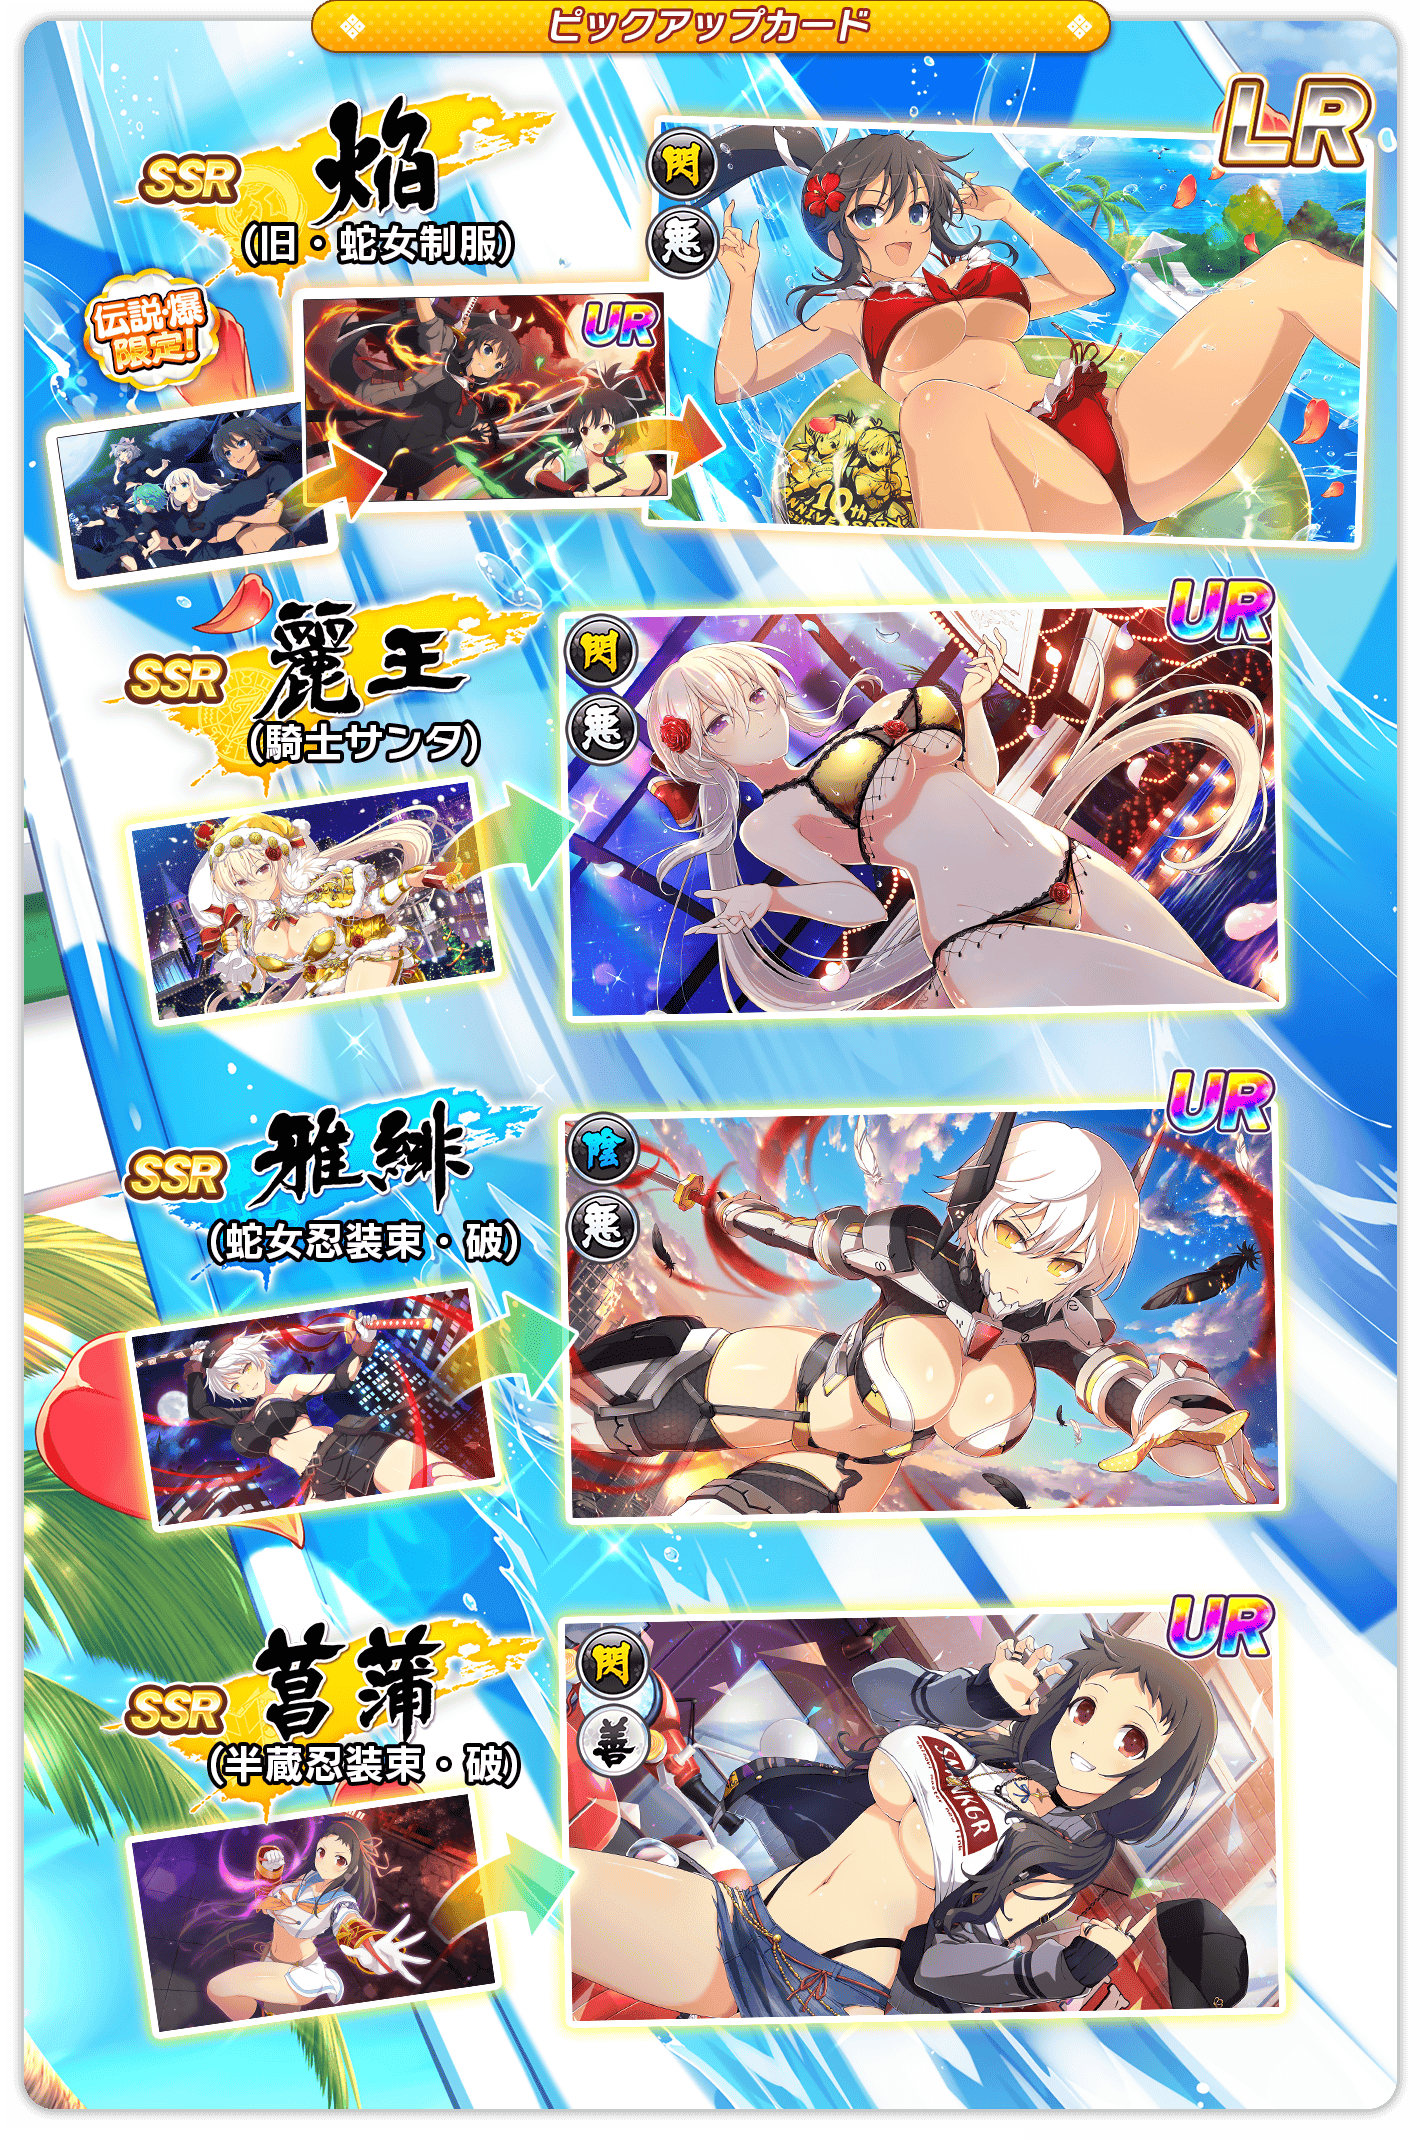 日版《闪乱神乐 NEW LINK》推出新卡片「盛・传说爆乳祭」咏